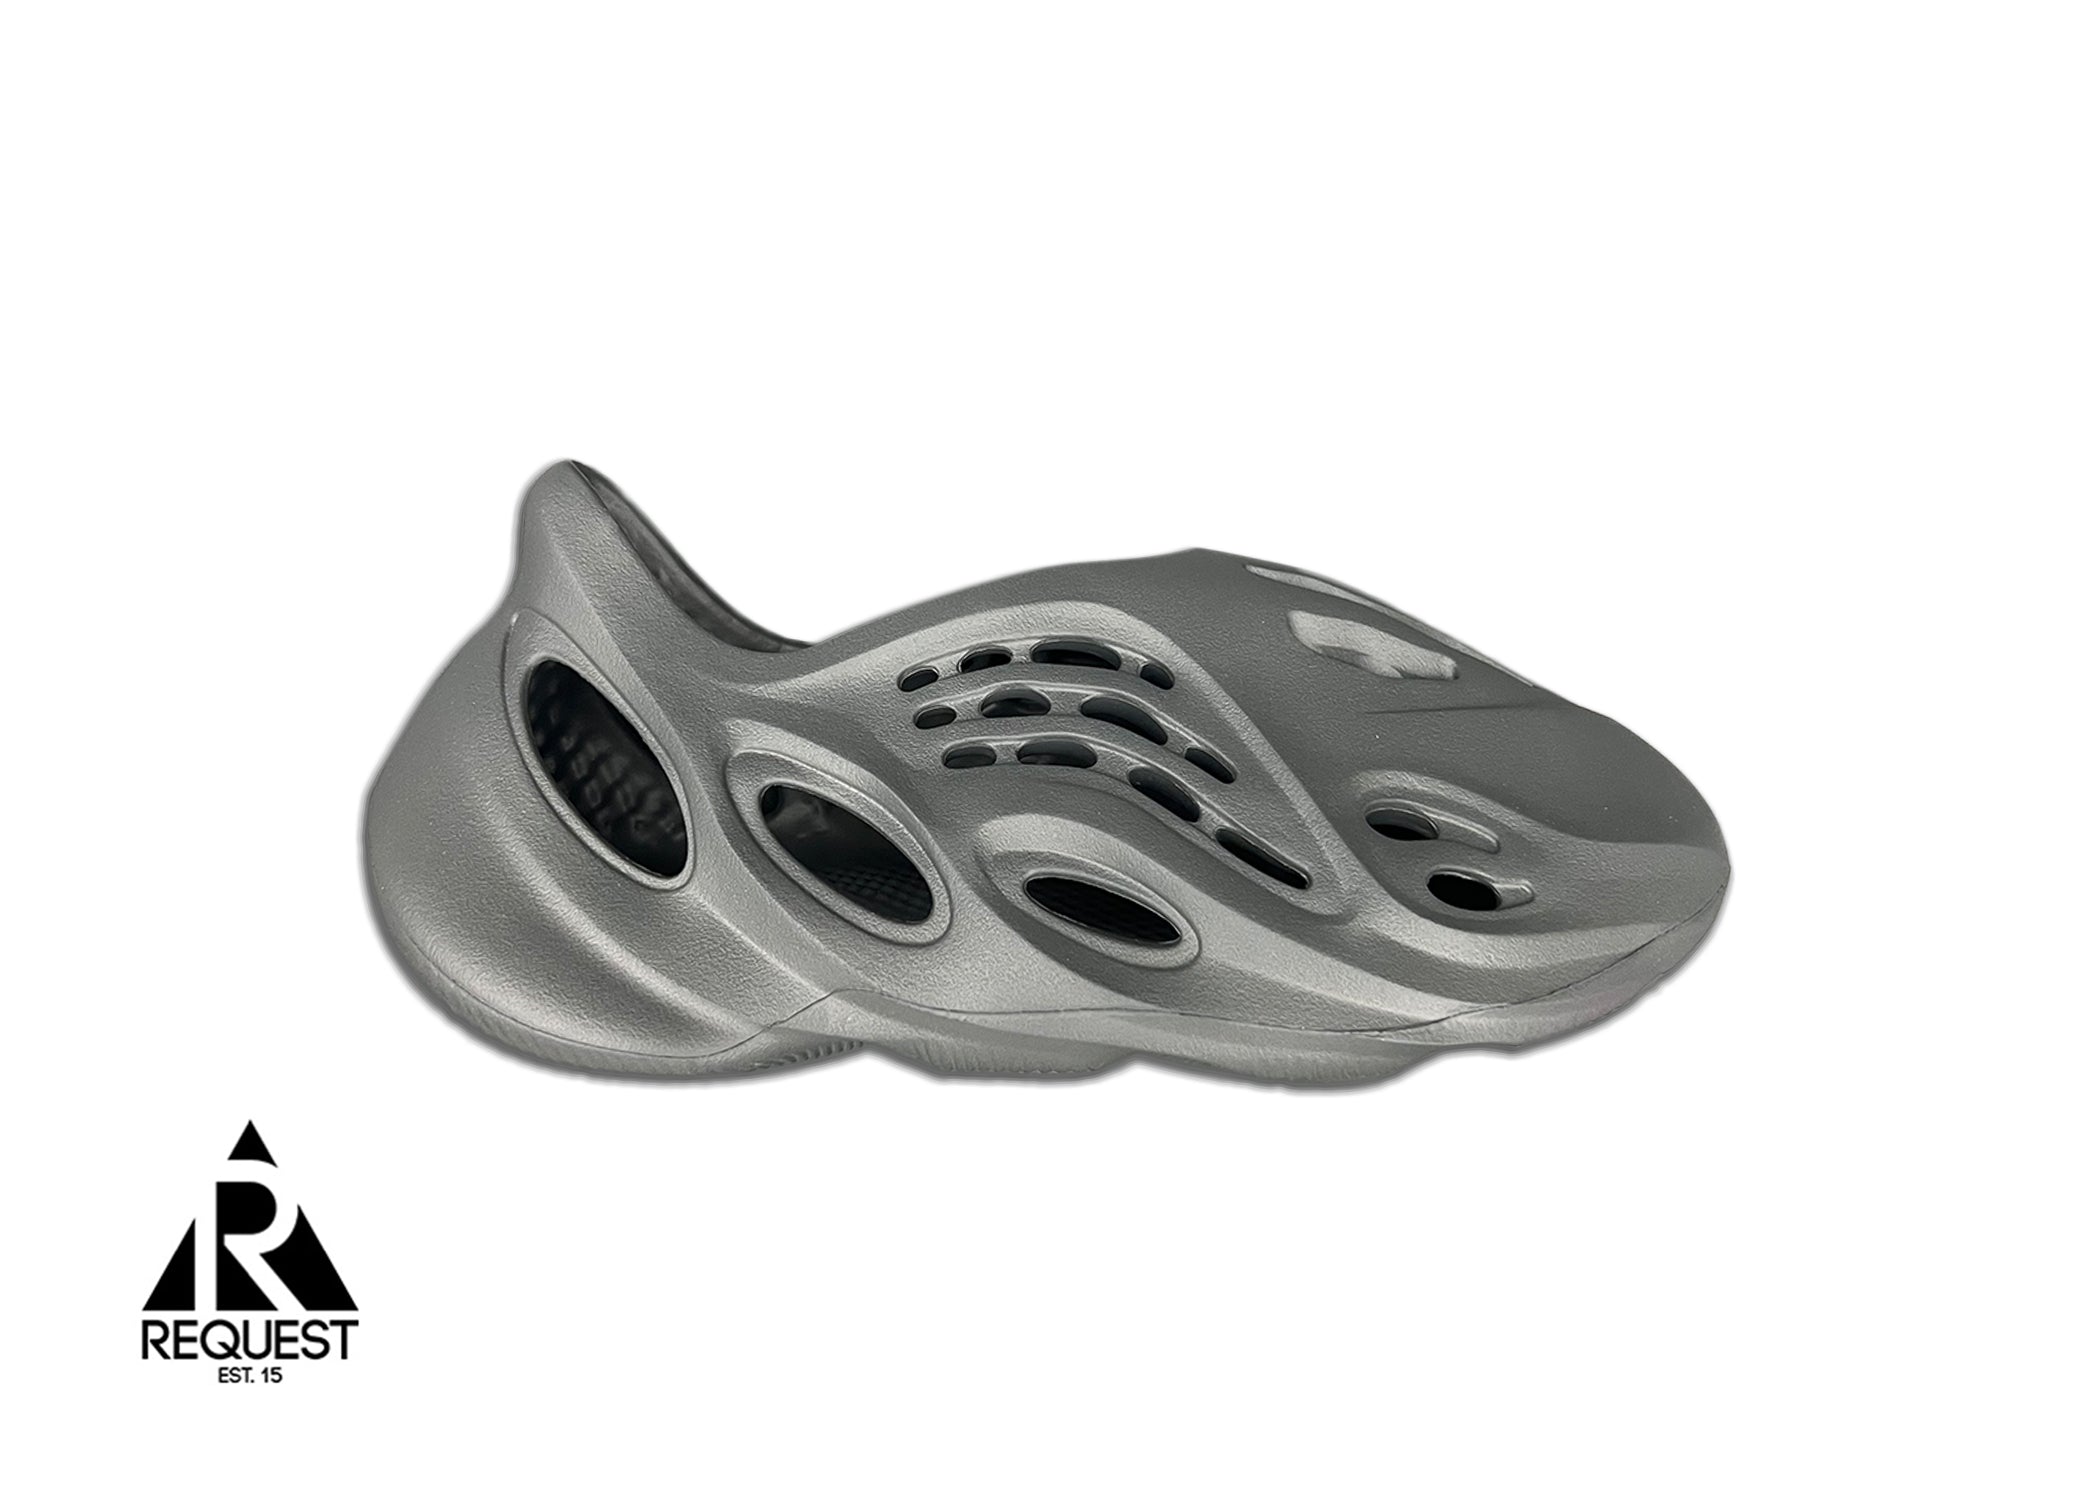 adidas Yeezy Foam Runner - Ig5349 - Sneakersnstuff (SNS